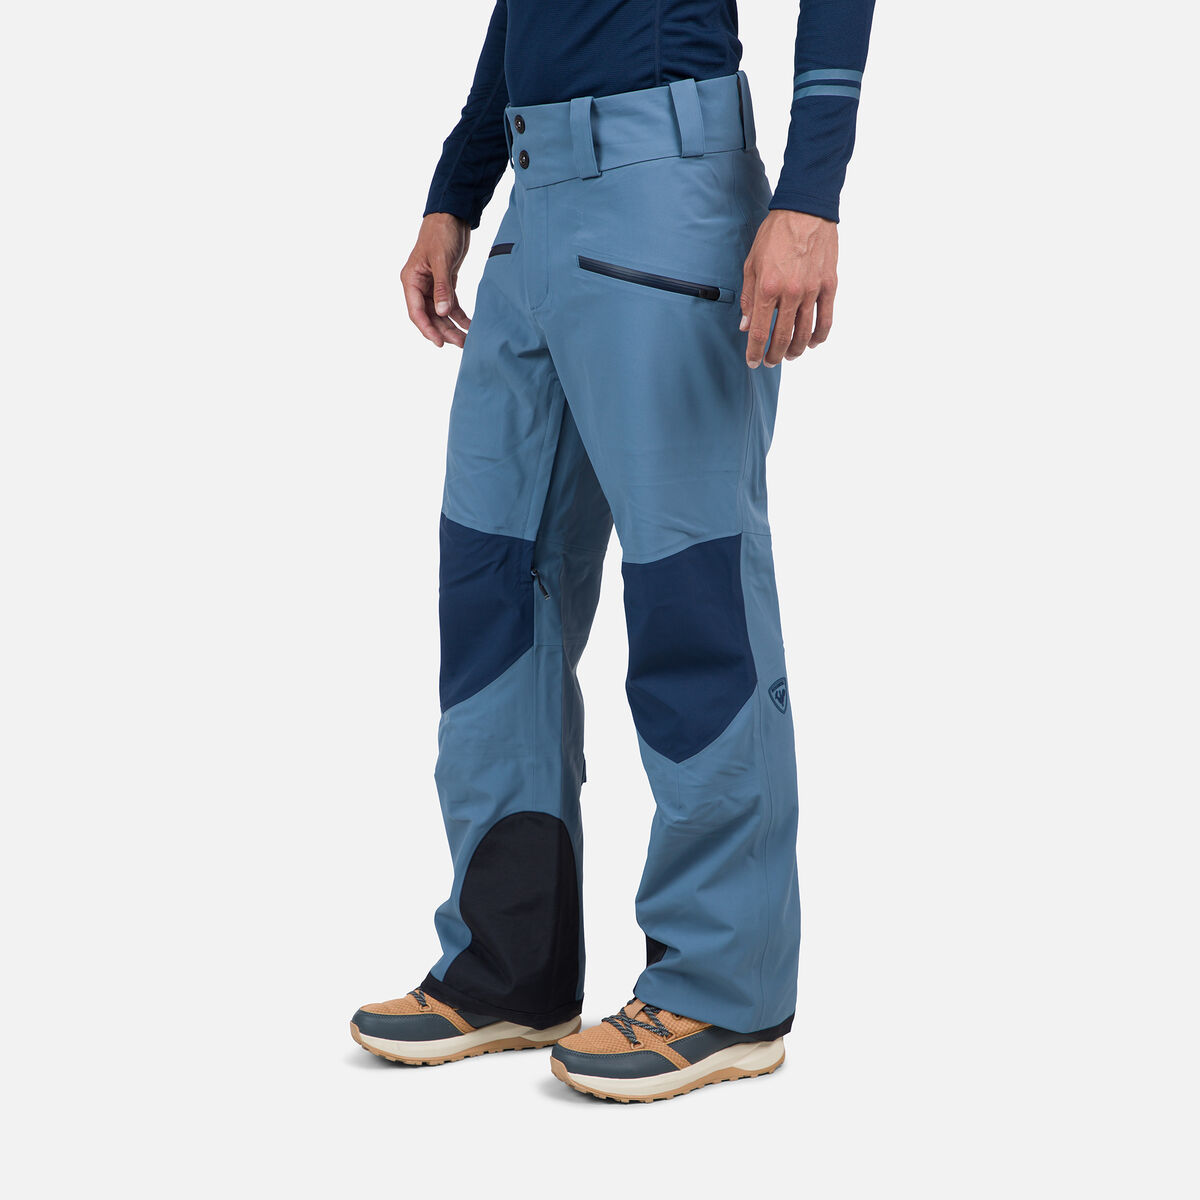 Rossignol Men's Evader Ski Pants Blue